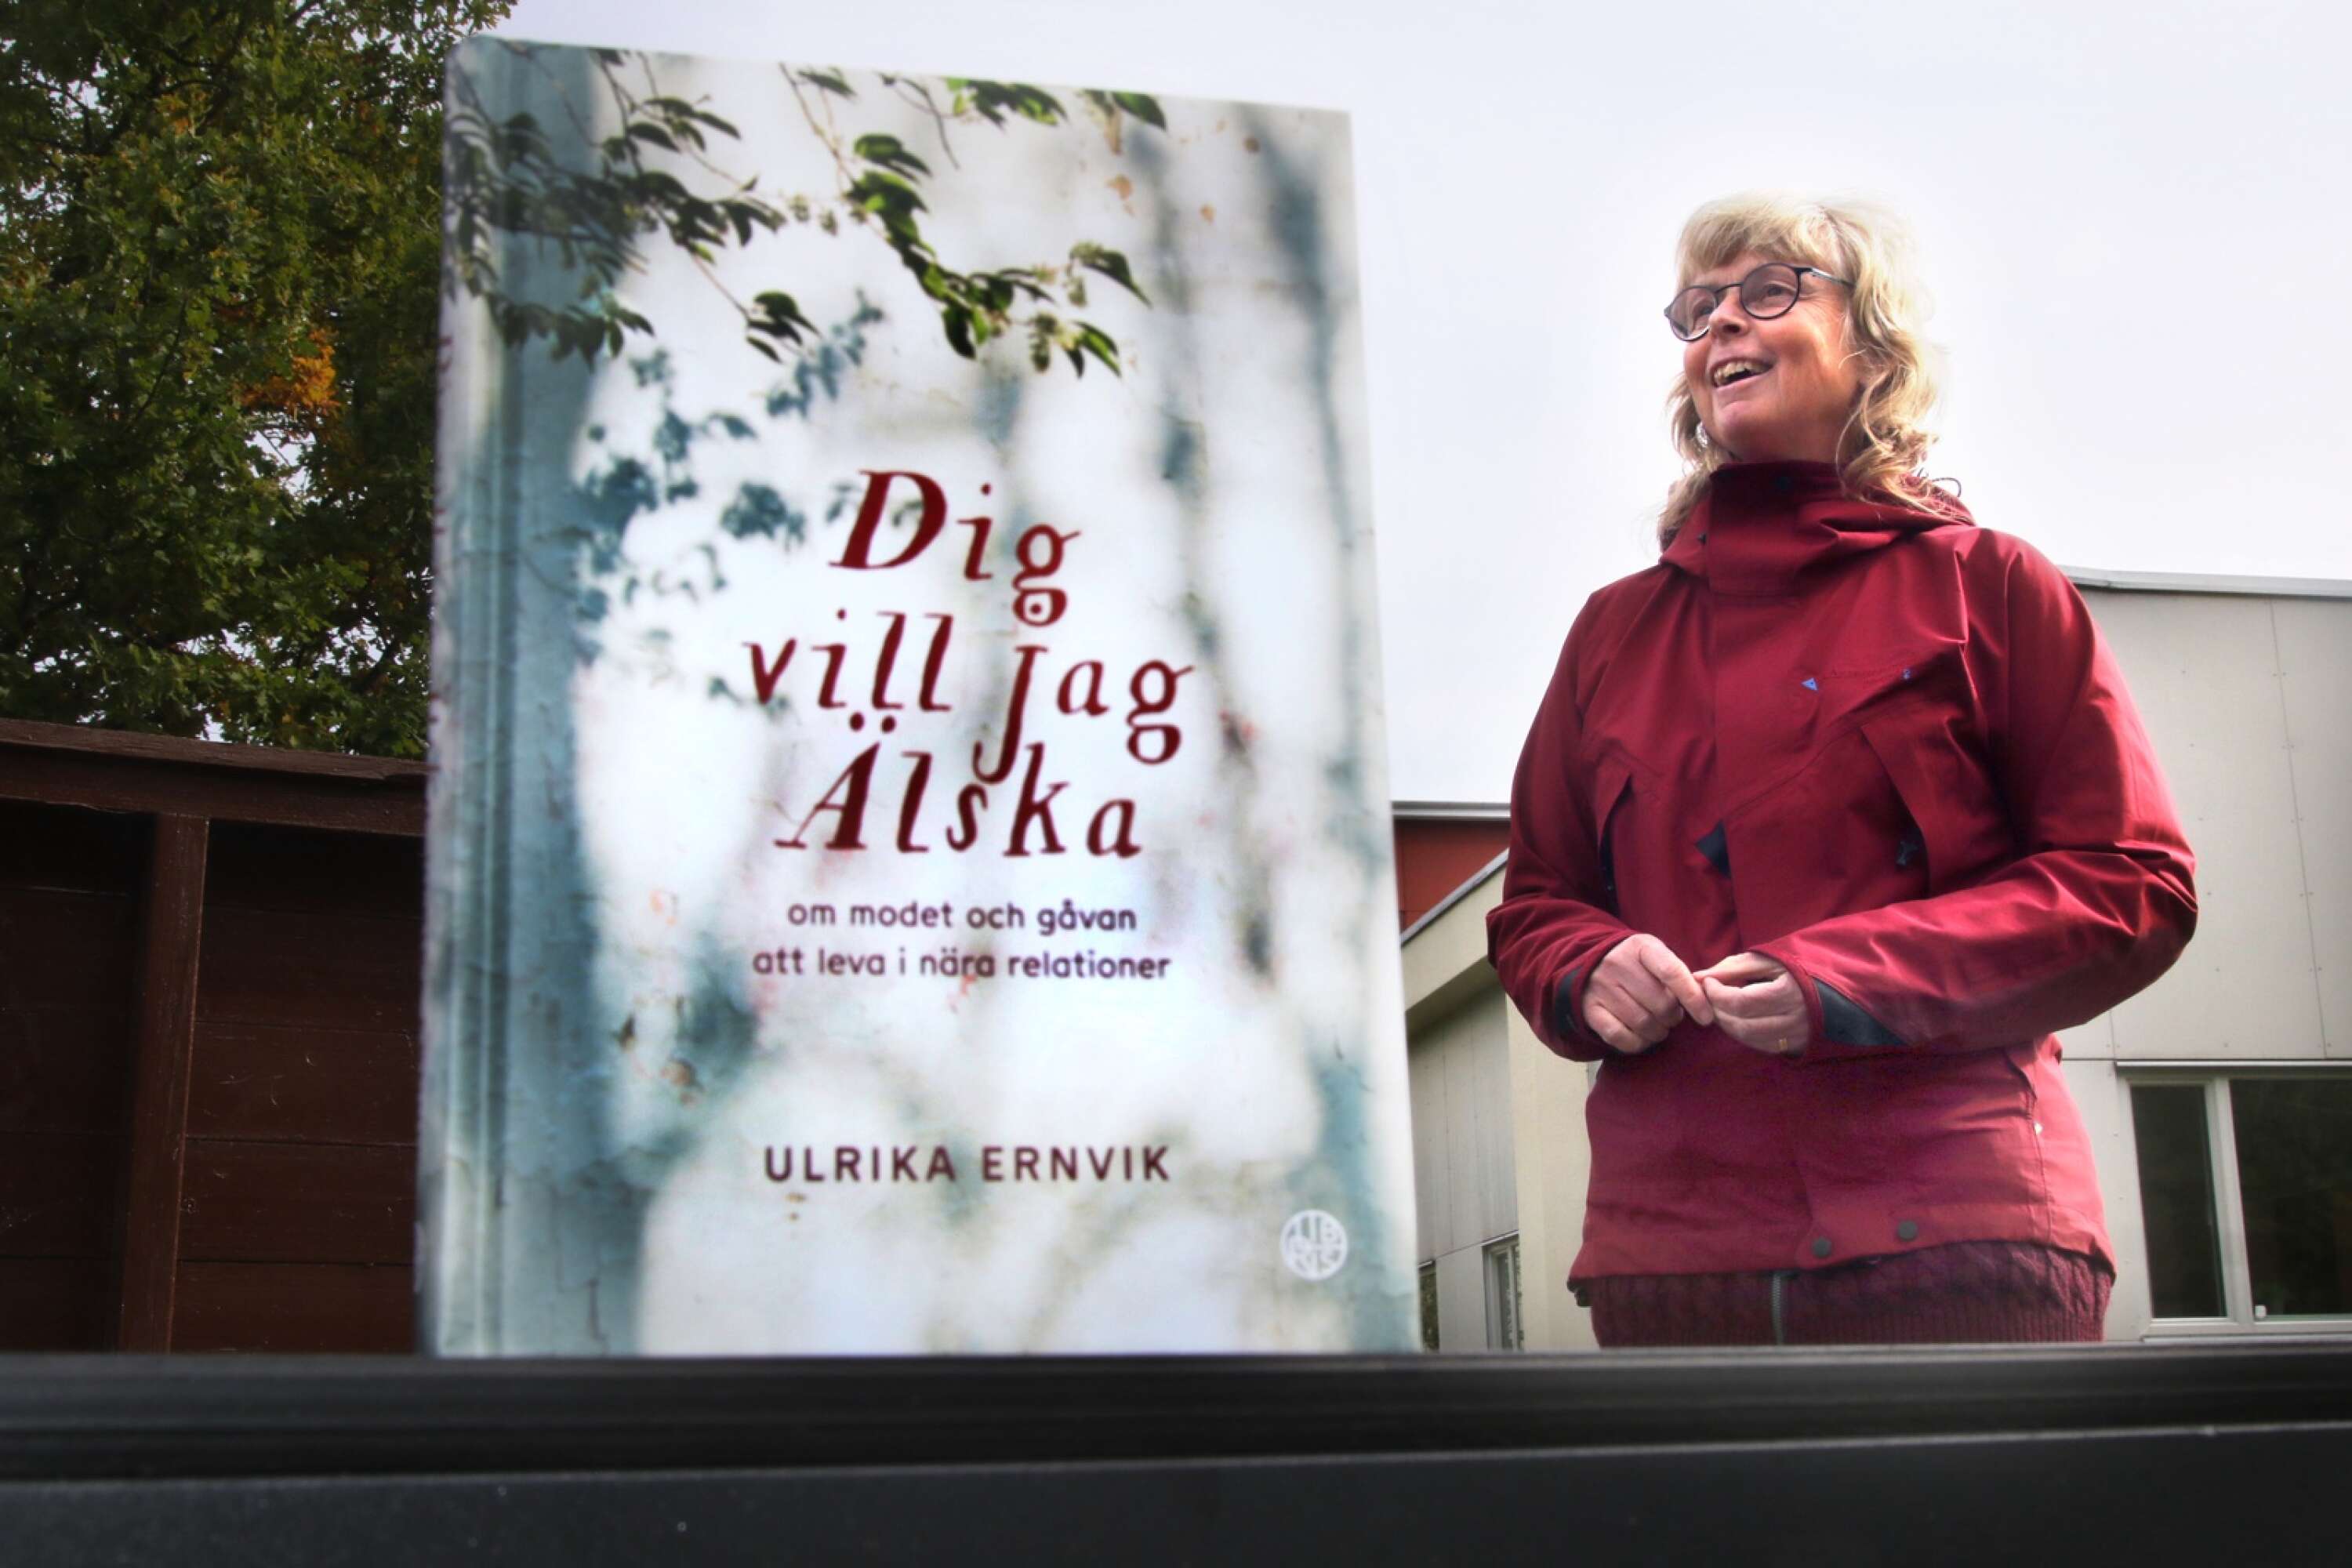 I sin senaste bok ”Dig vill jag älska” har Ulrika Ernvik tematiserat på relationer med fokus på trygghet.